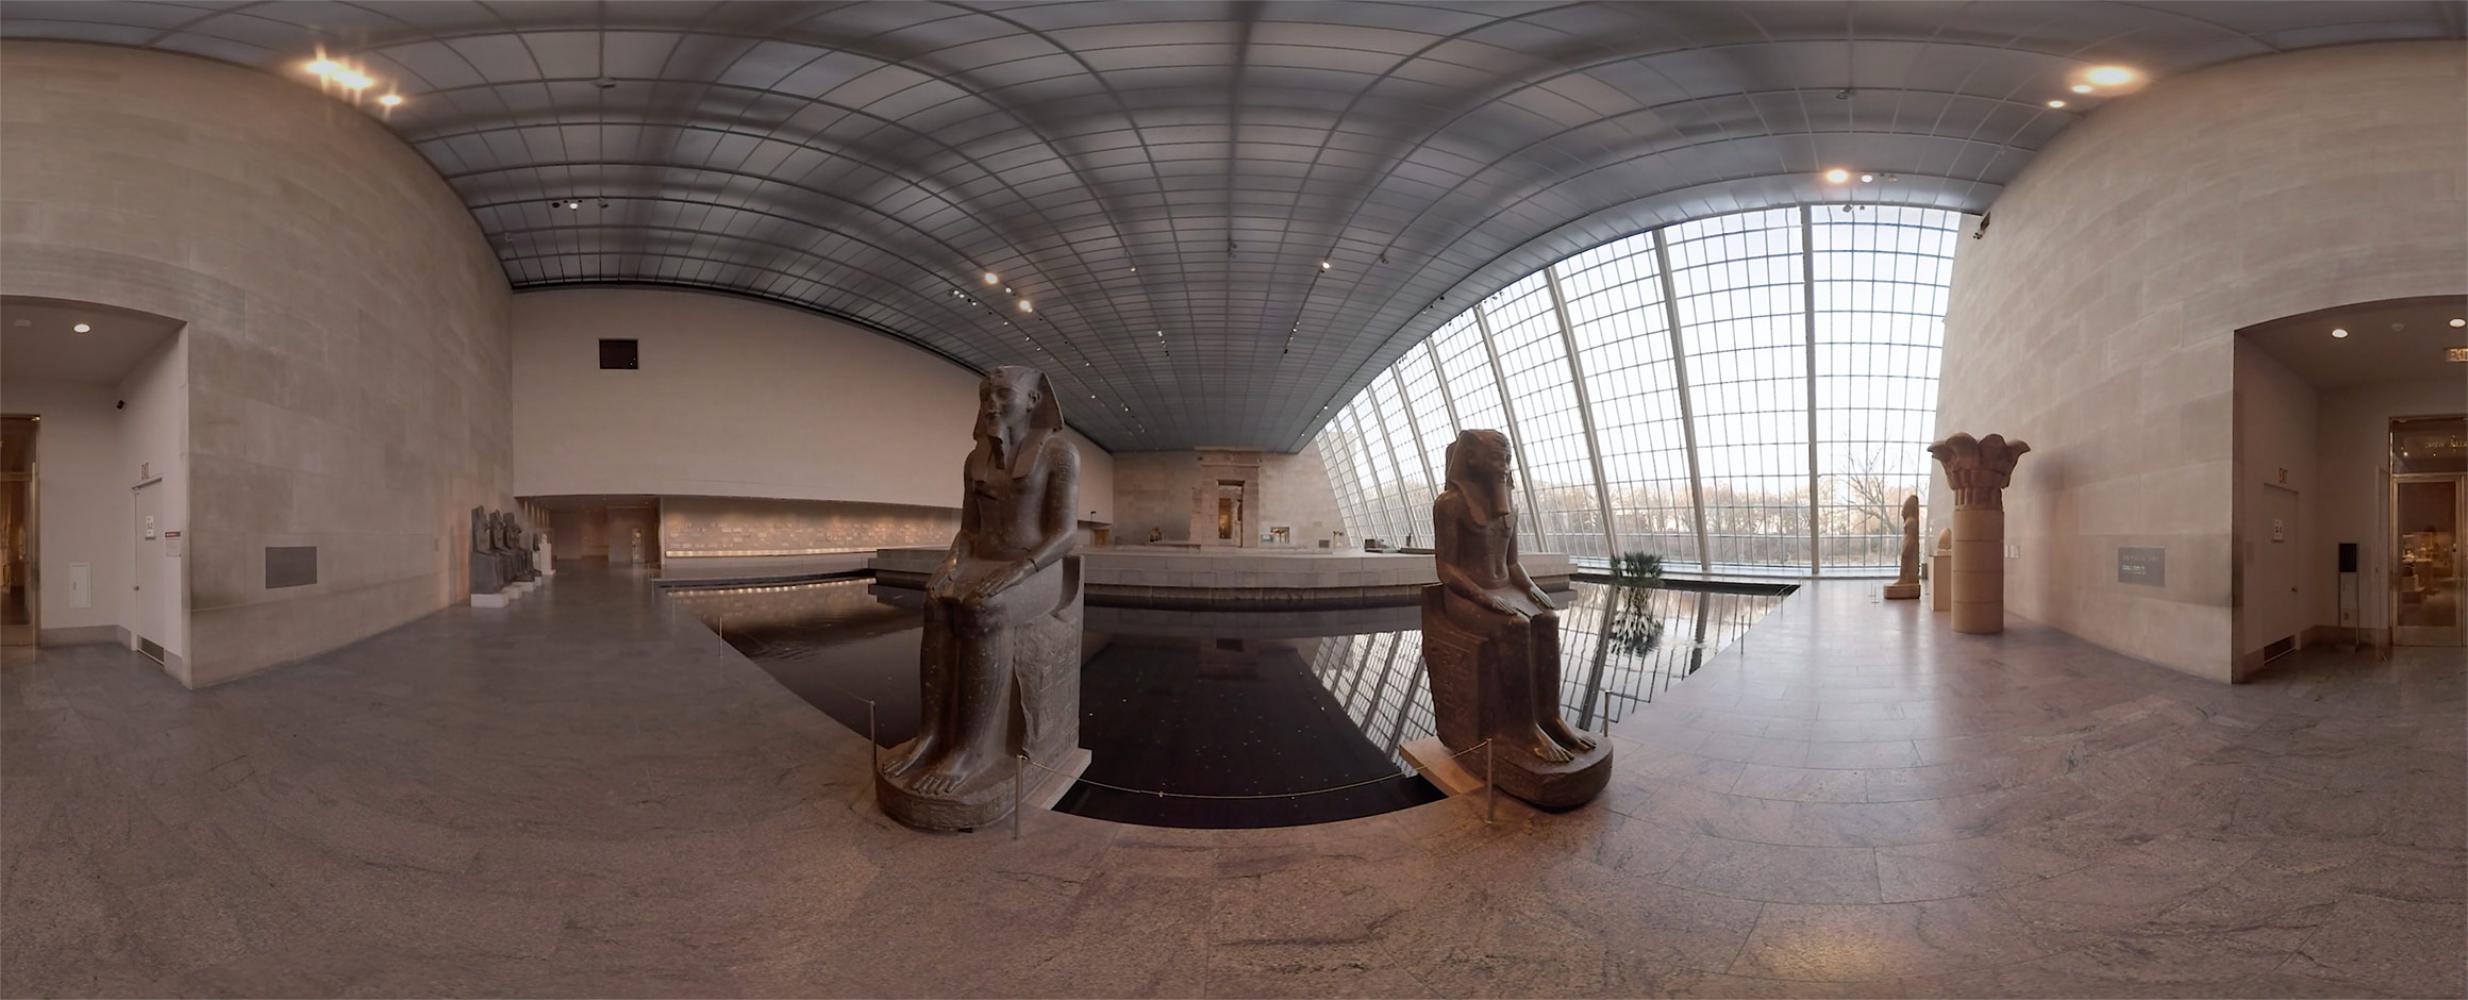 Nur zweite Wahl? Ansicht aus dem digitalen Rundgang durchs derzeit geschlossene Metropolitan Museum in New York  